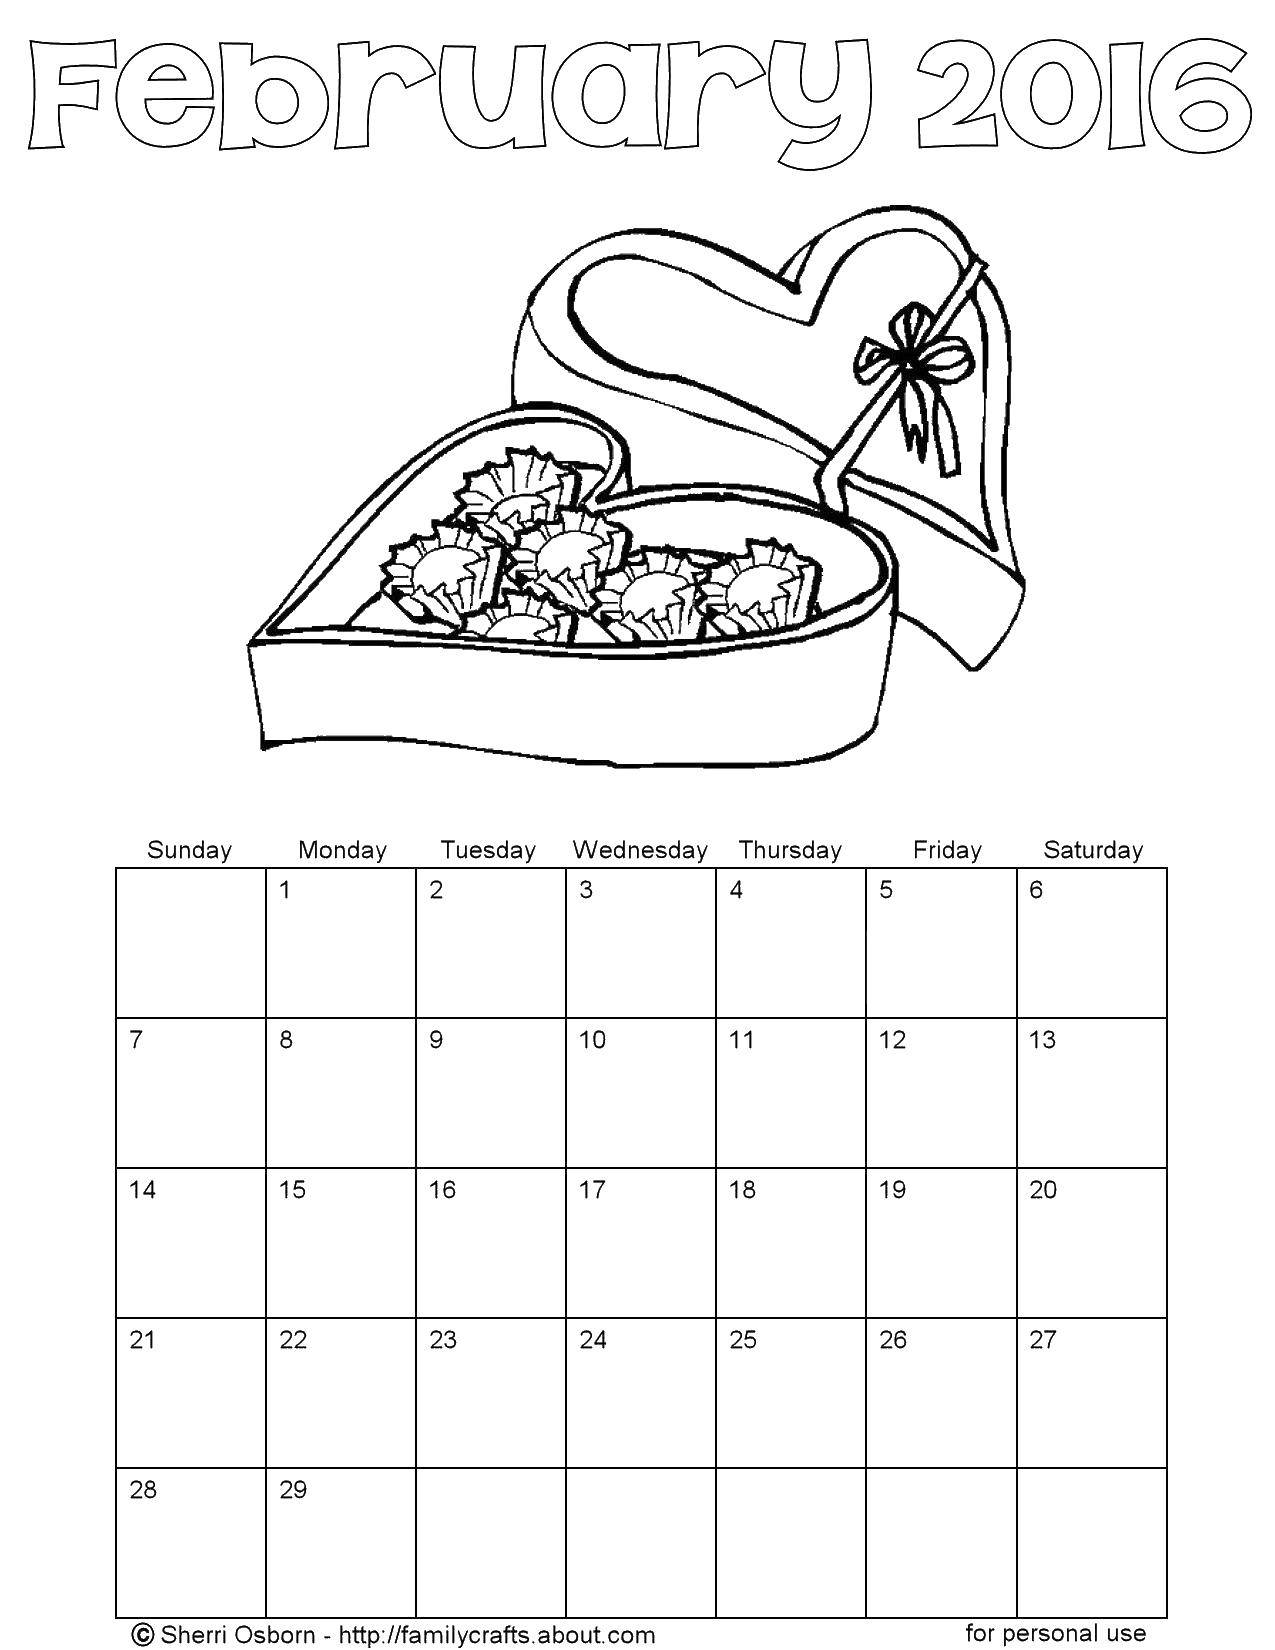 Раскрашенный календарь февраль с конфетами (календарь, февраль, конфеты, развлечение)